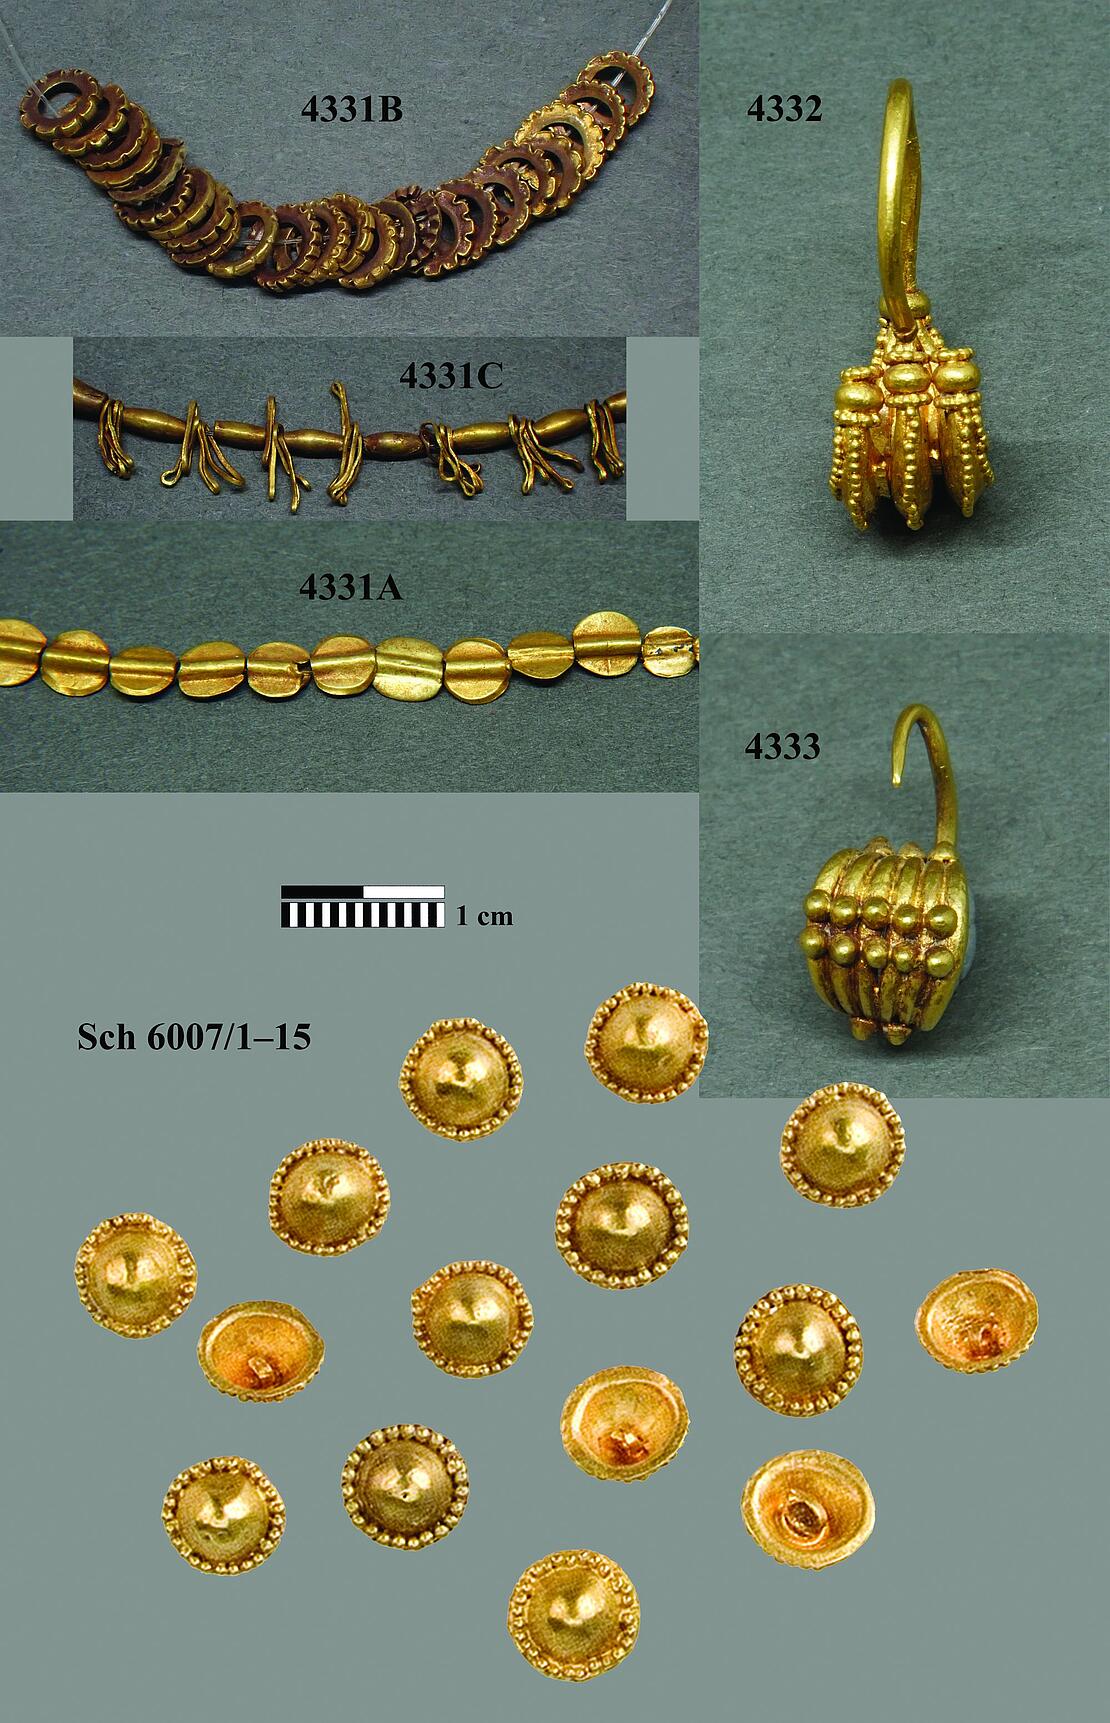 Goldschmuck aus der frühen Bronzezeit